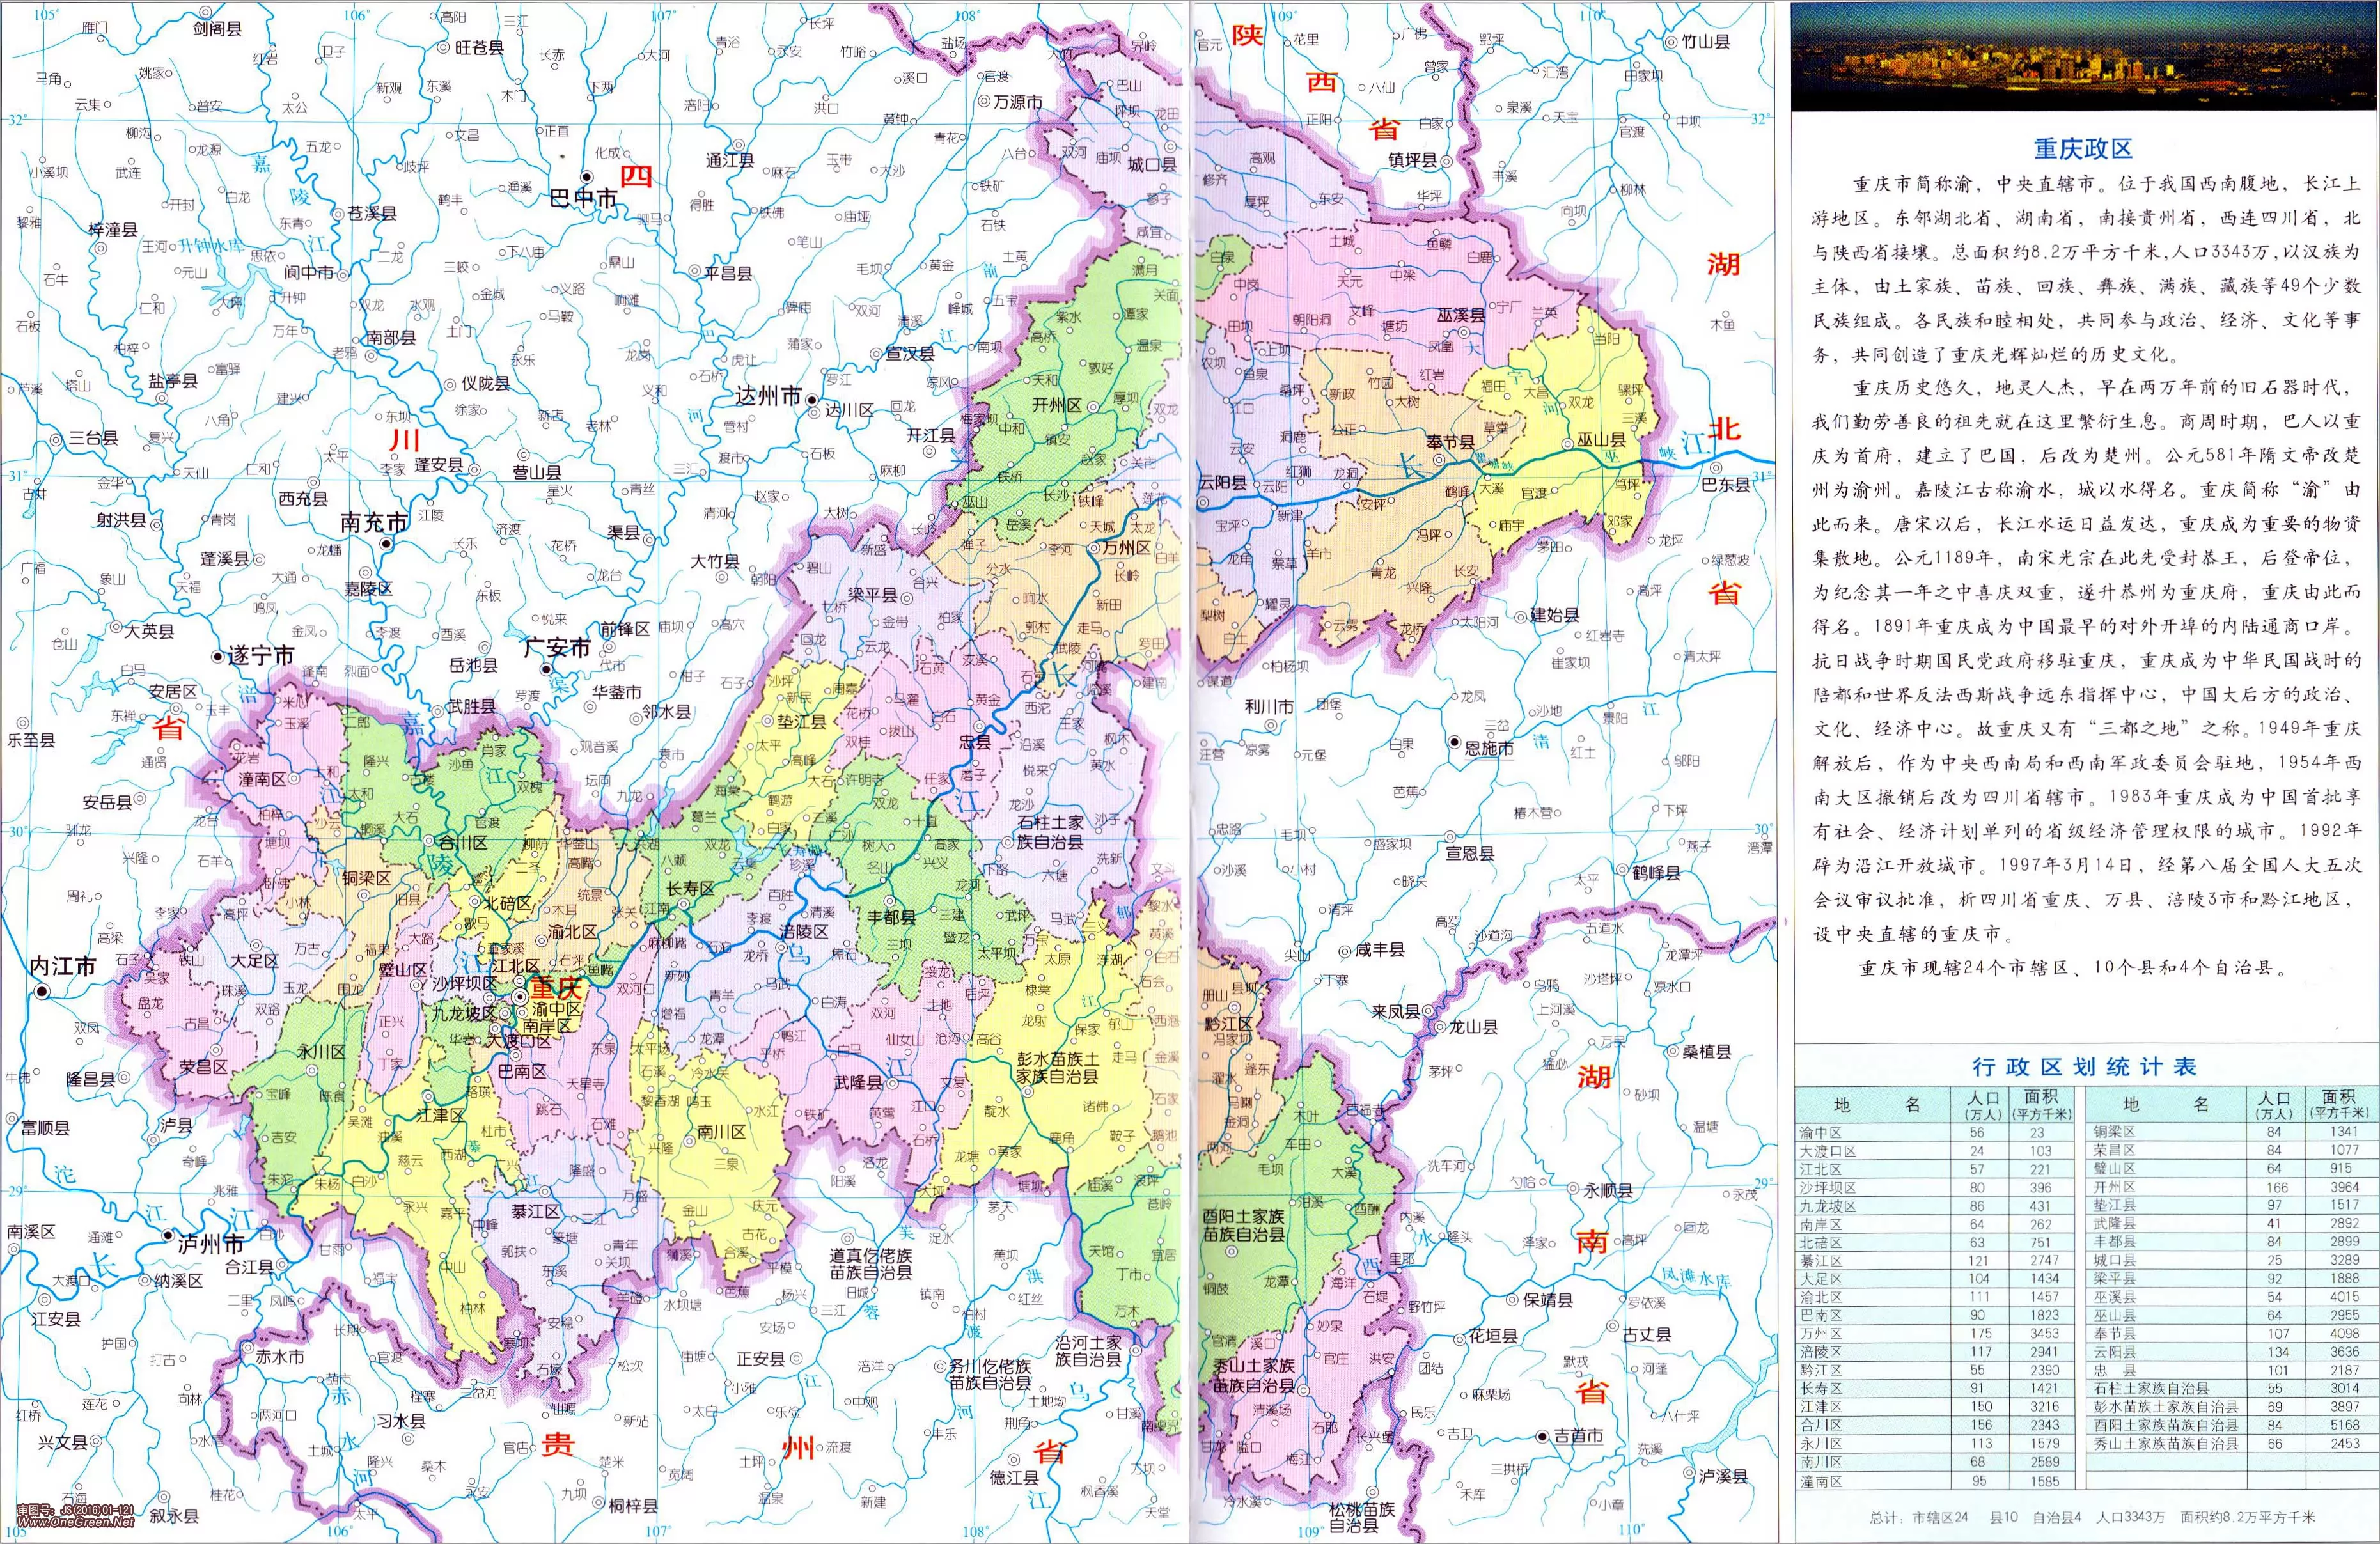 重庆行区划地图 - 重庆市地图 - 地理教师网